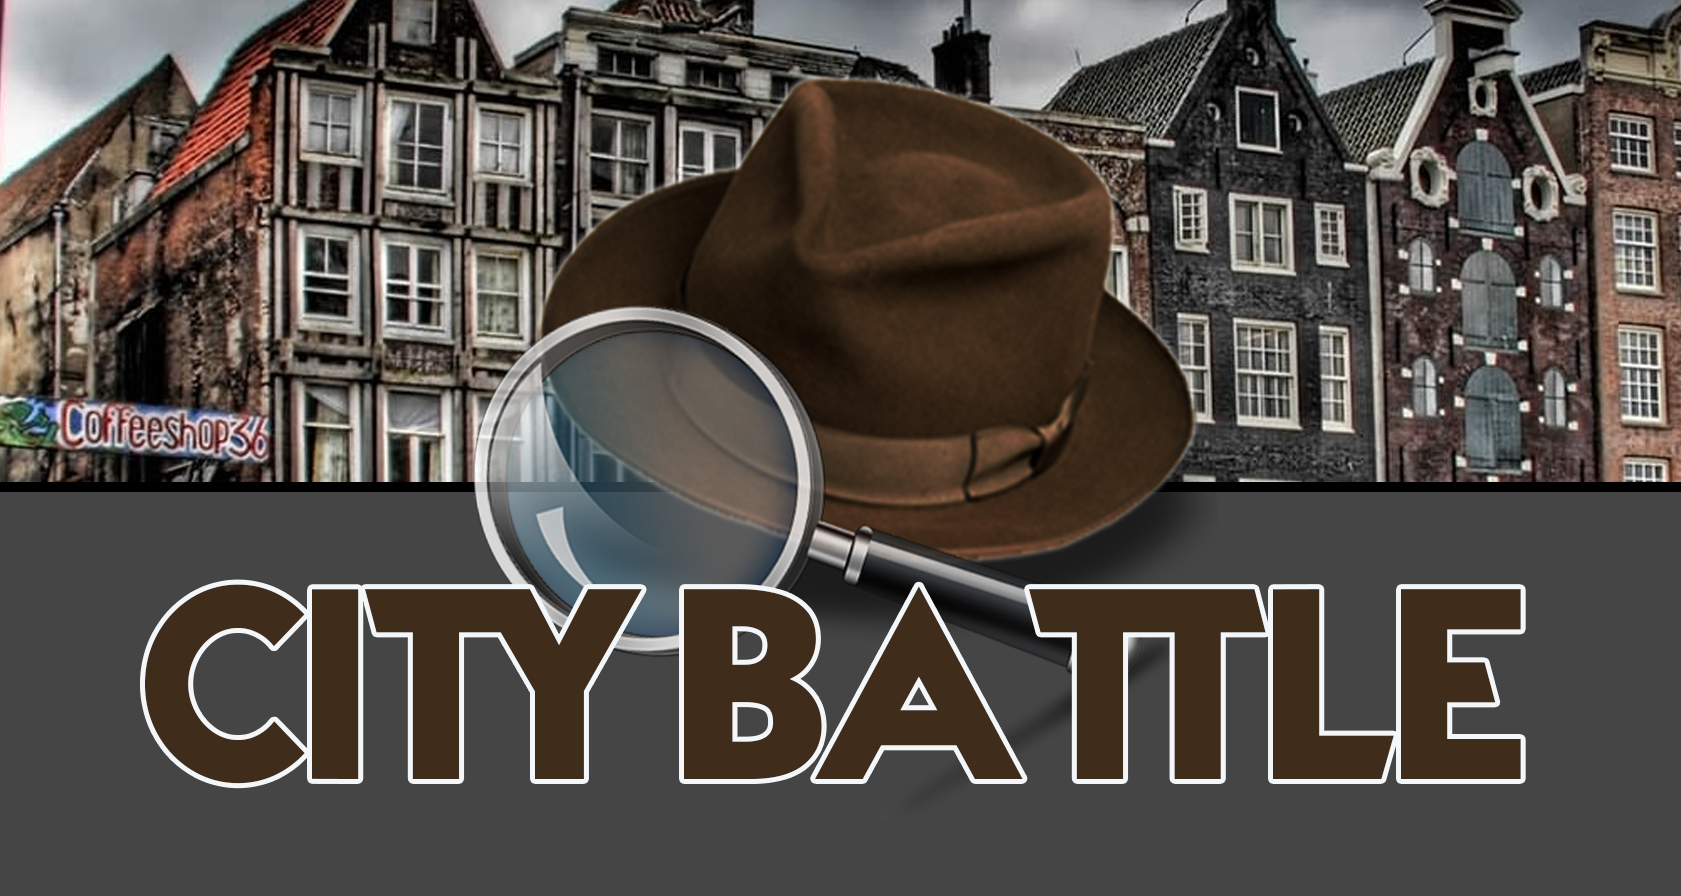 Personeelsuitje Eindhoven: De Ultieme City Battle